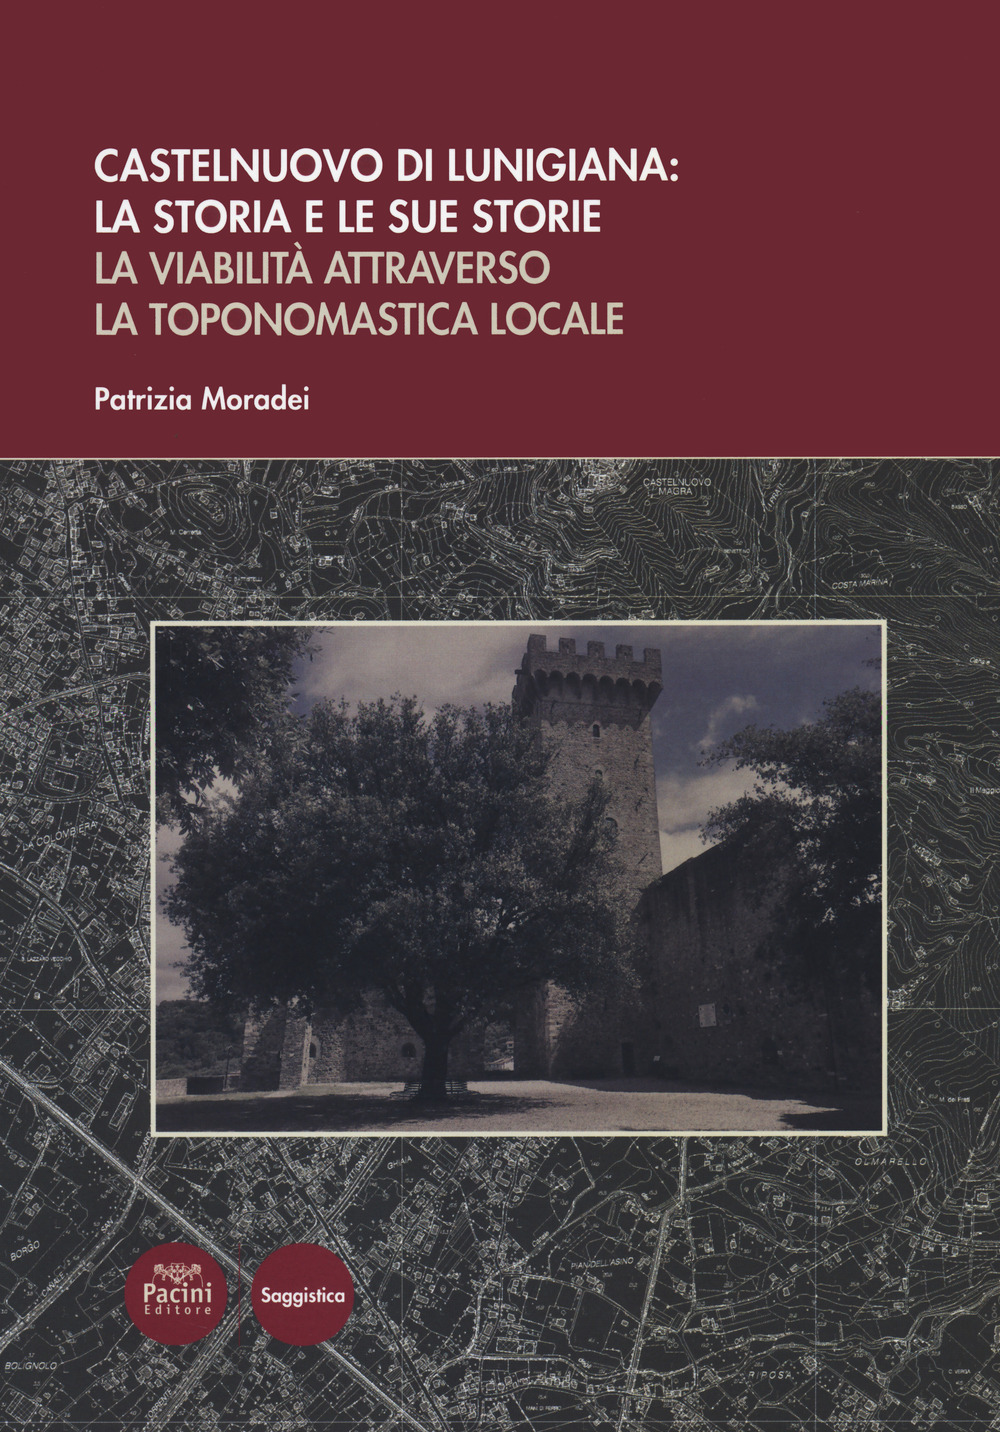 Castelnuovo di Lunigiana: la storia e le sue storie. La viabilità attraverso la toponomastica locale